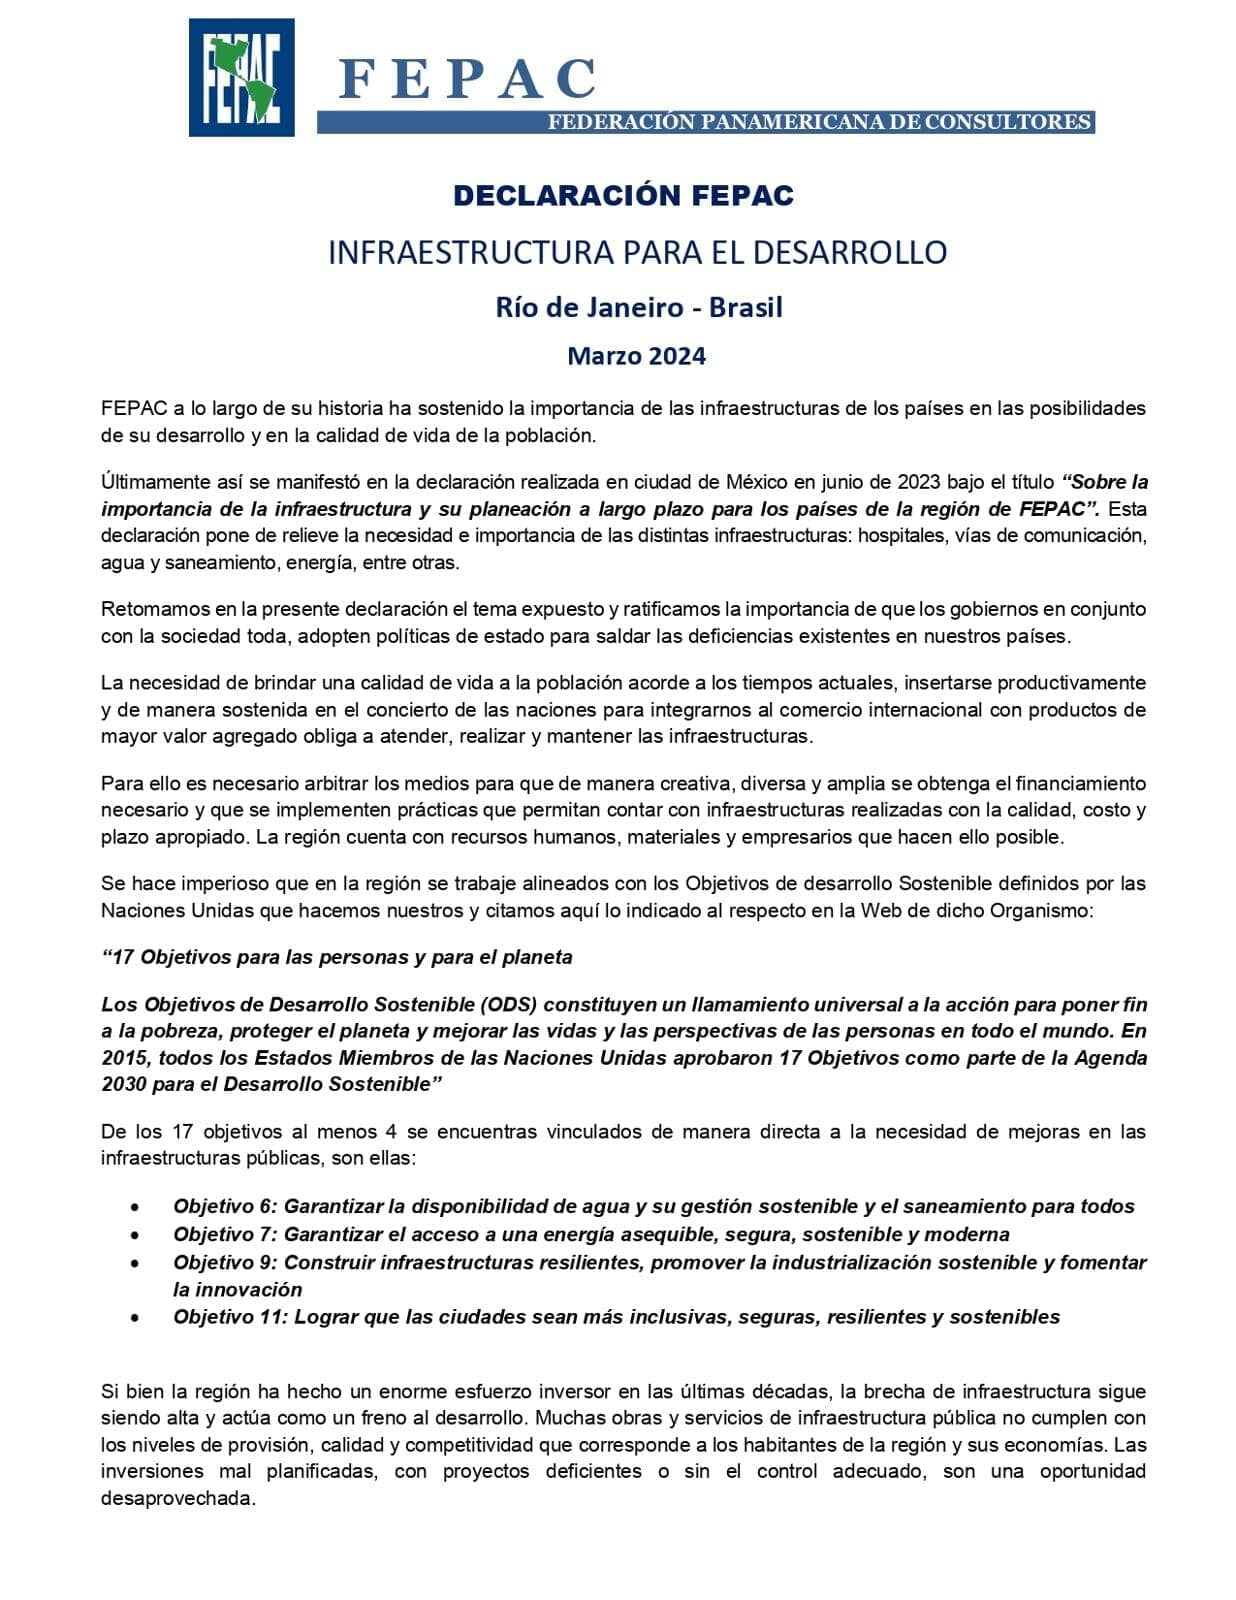 Declaración de FEPAC en Río de Janeiro, Brasil